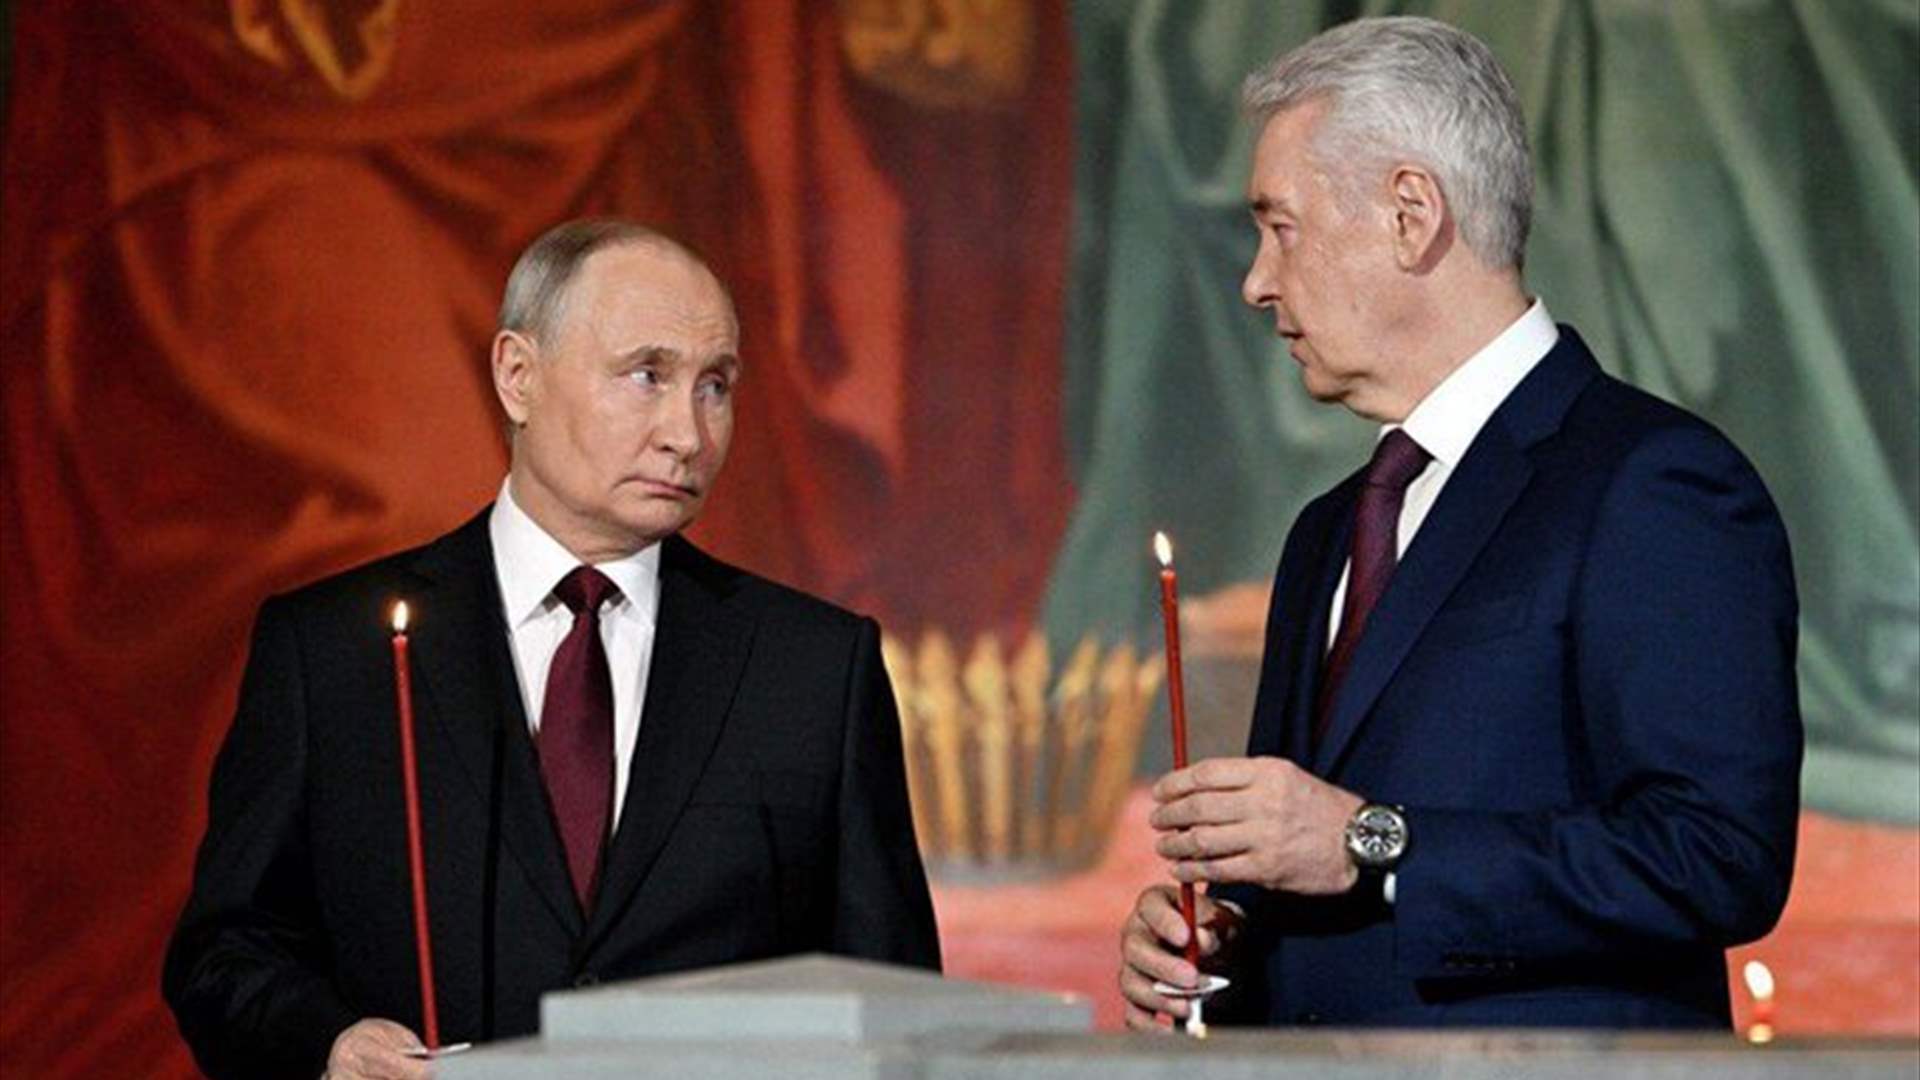 بوتين يحضر قداس عيد القيامة ويحمل شمعة حمراء مضاءة (فيديو)